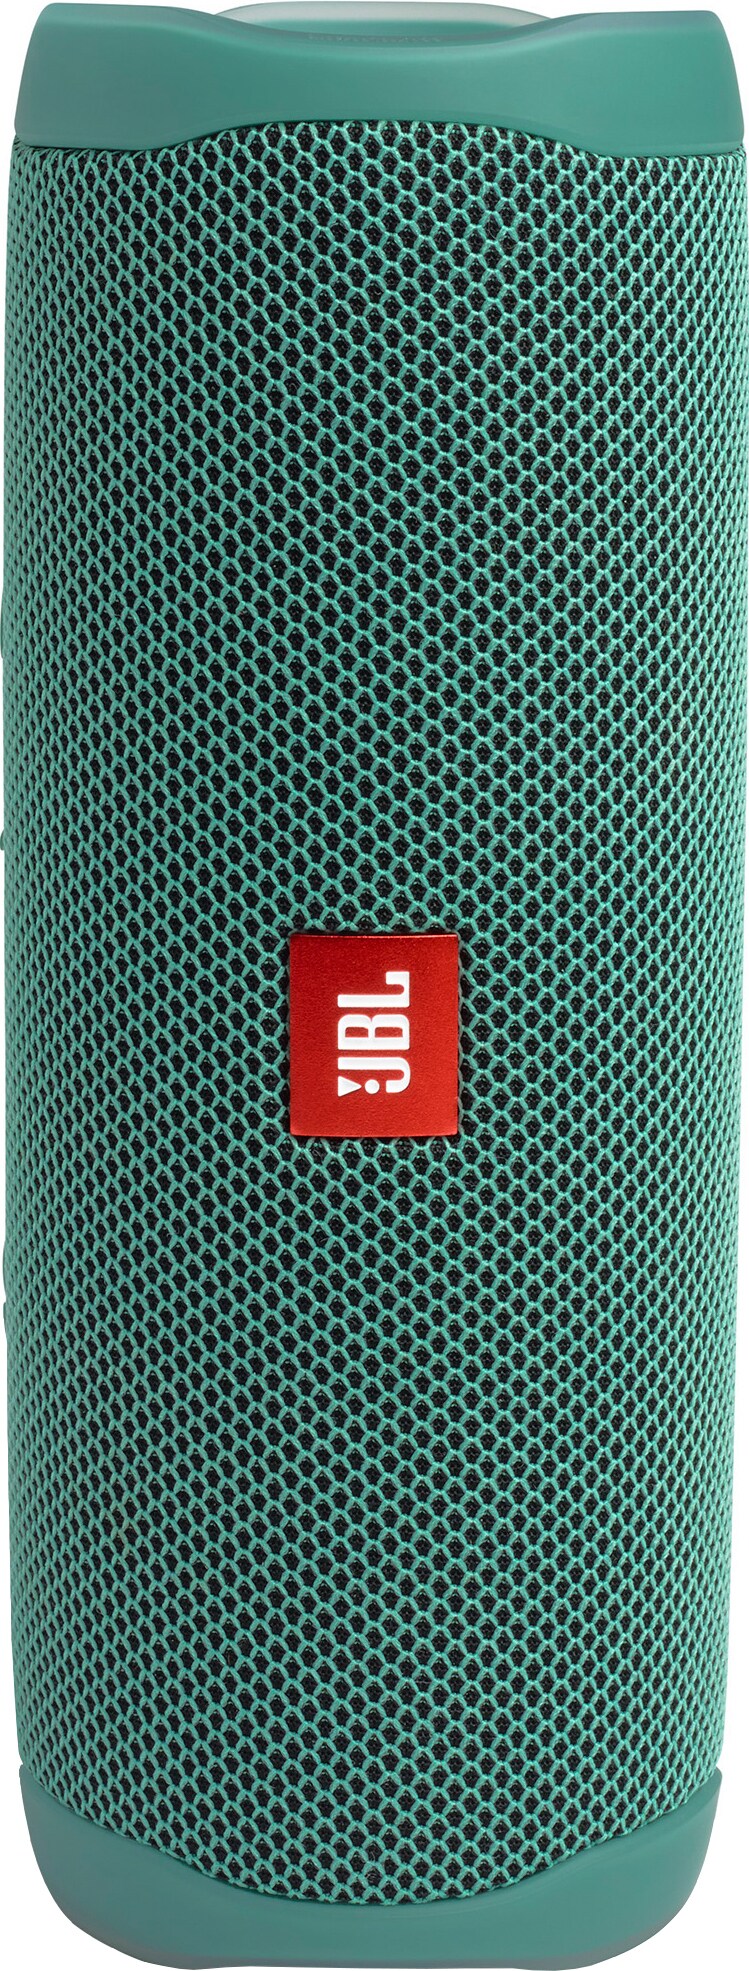 JBL Flip 5 Eco edition bärbar trådlös högtalare (grön)